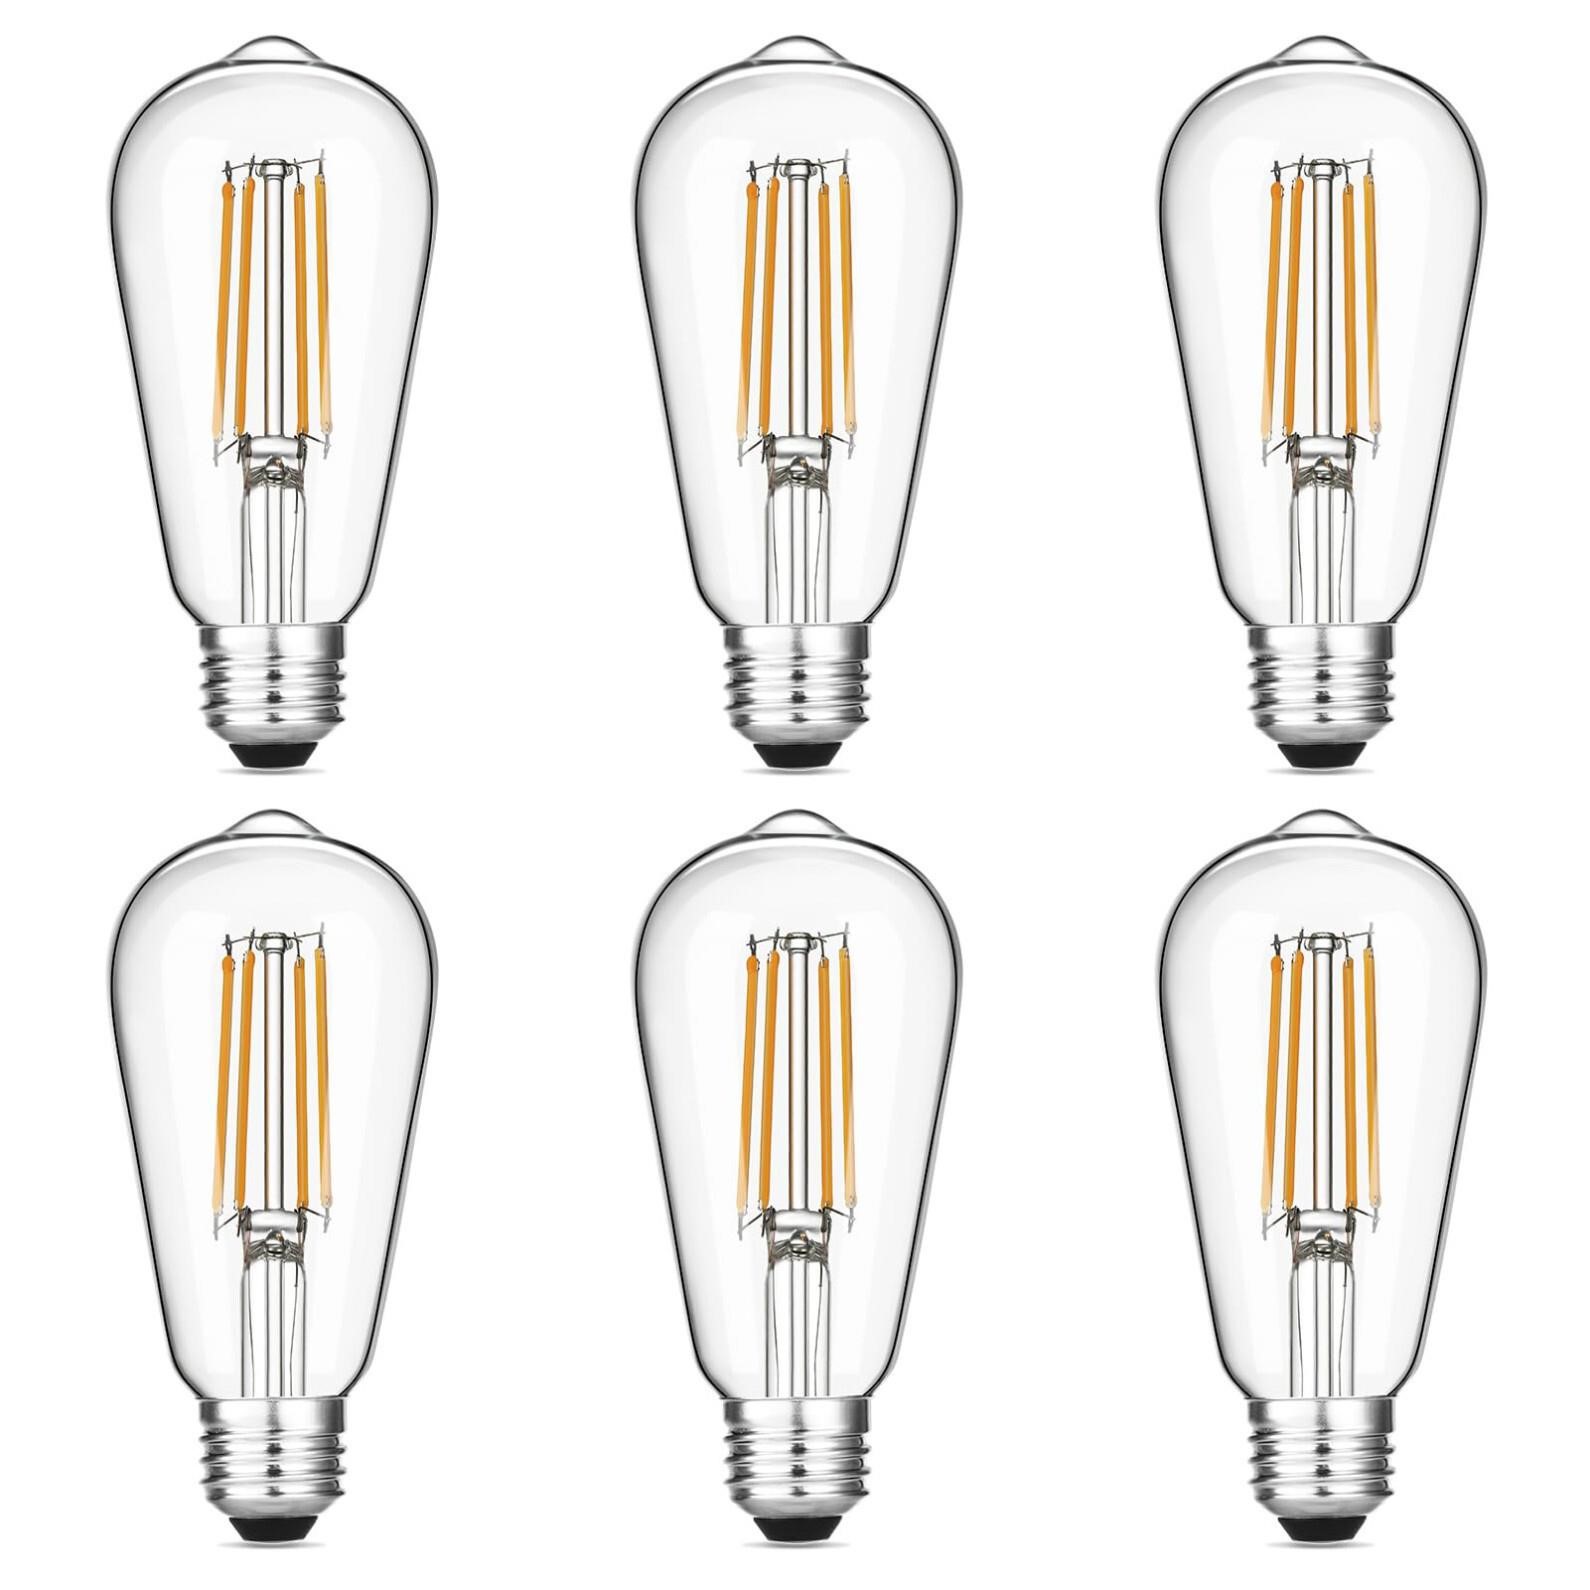 Gozelux Vintage LED Edison Bulbs 6W, Equivalent 60